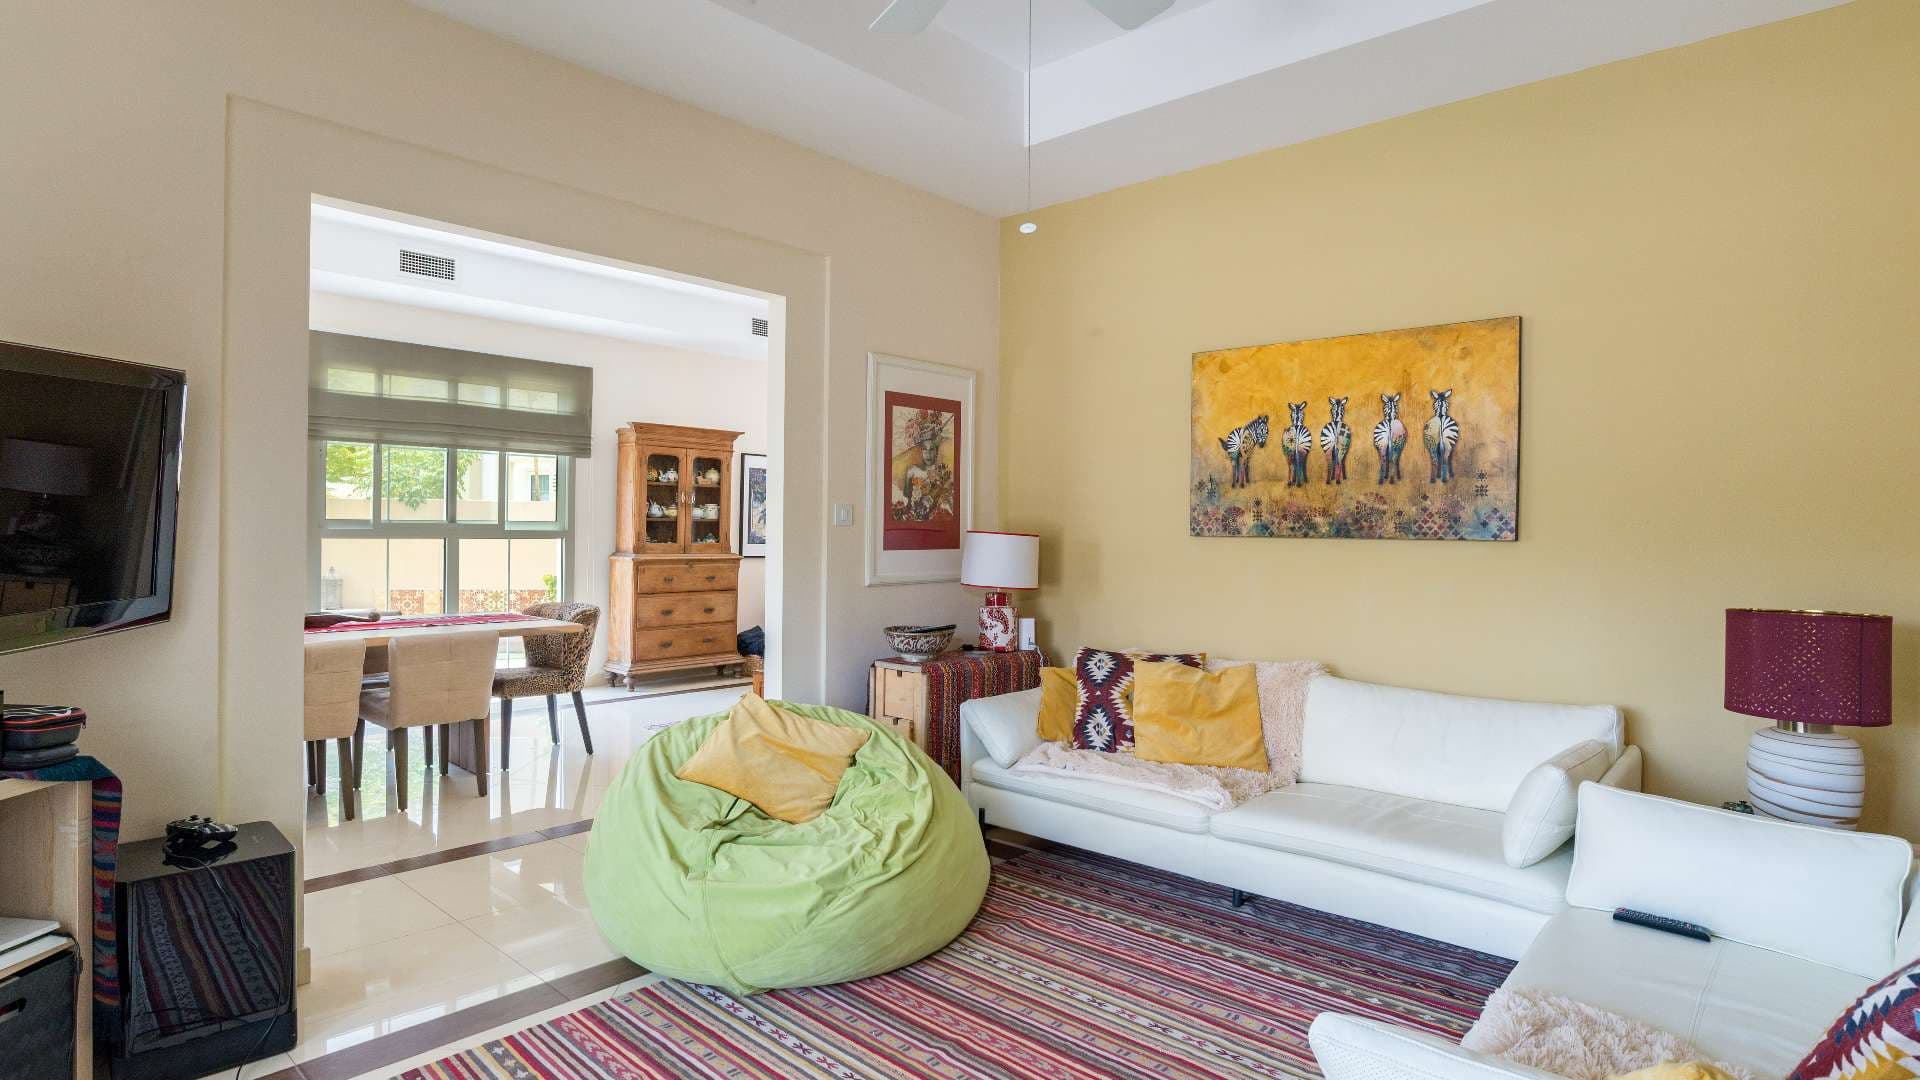 3 Bedroom Villa For Rent Rahat Lp07864 1f18c941304ee900.jpg